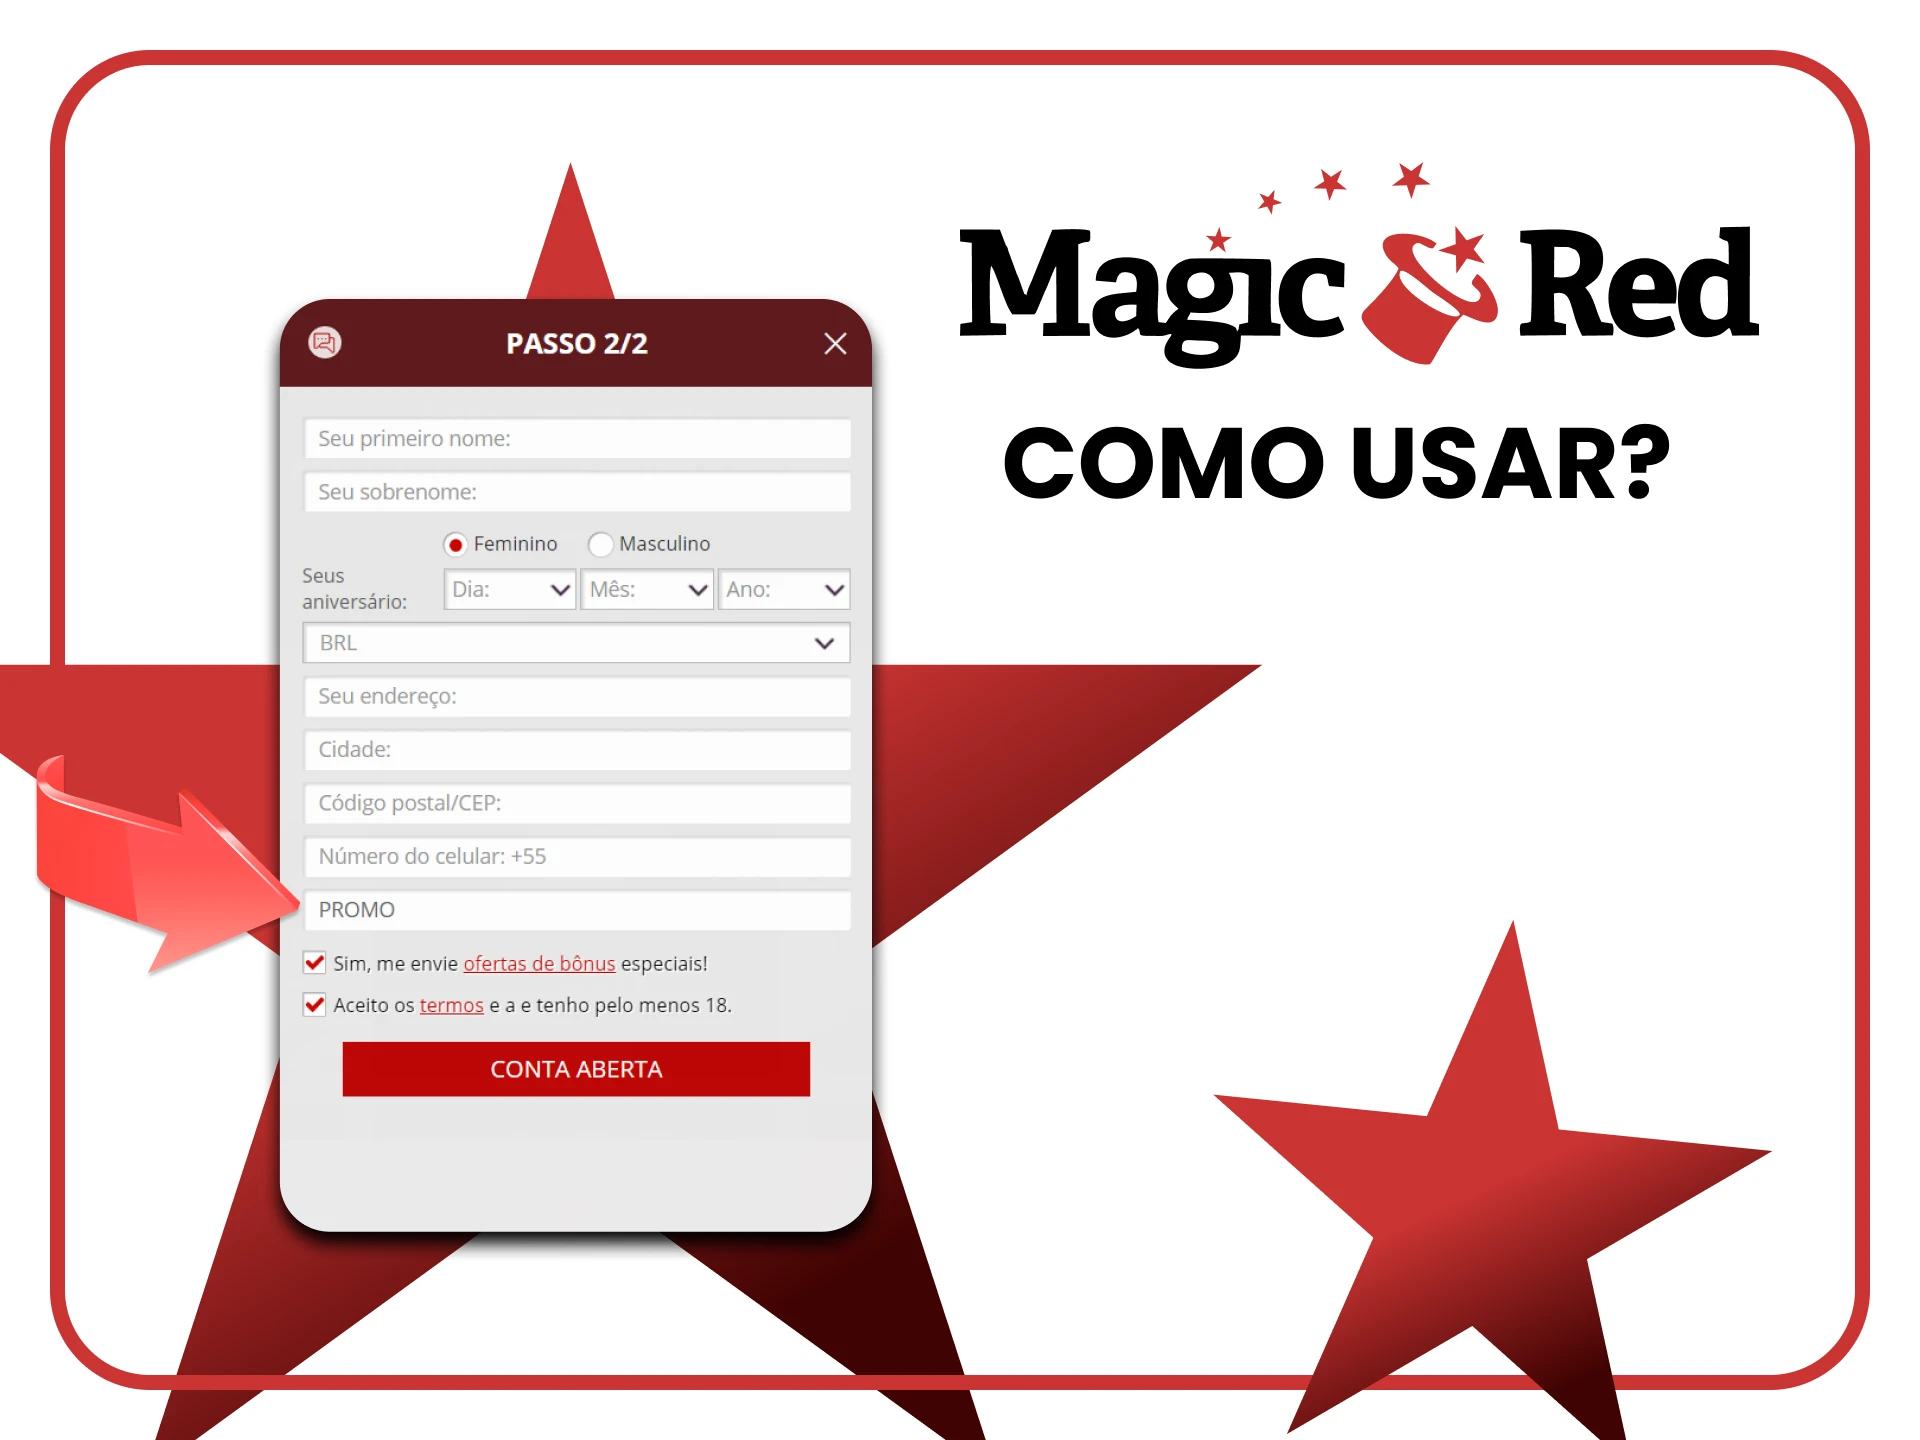 Diremos a você como usar um código promocional do Magic Red.